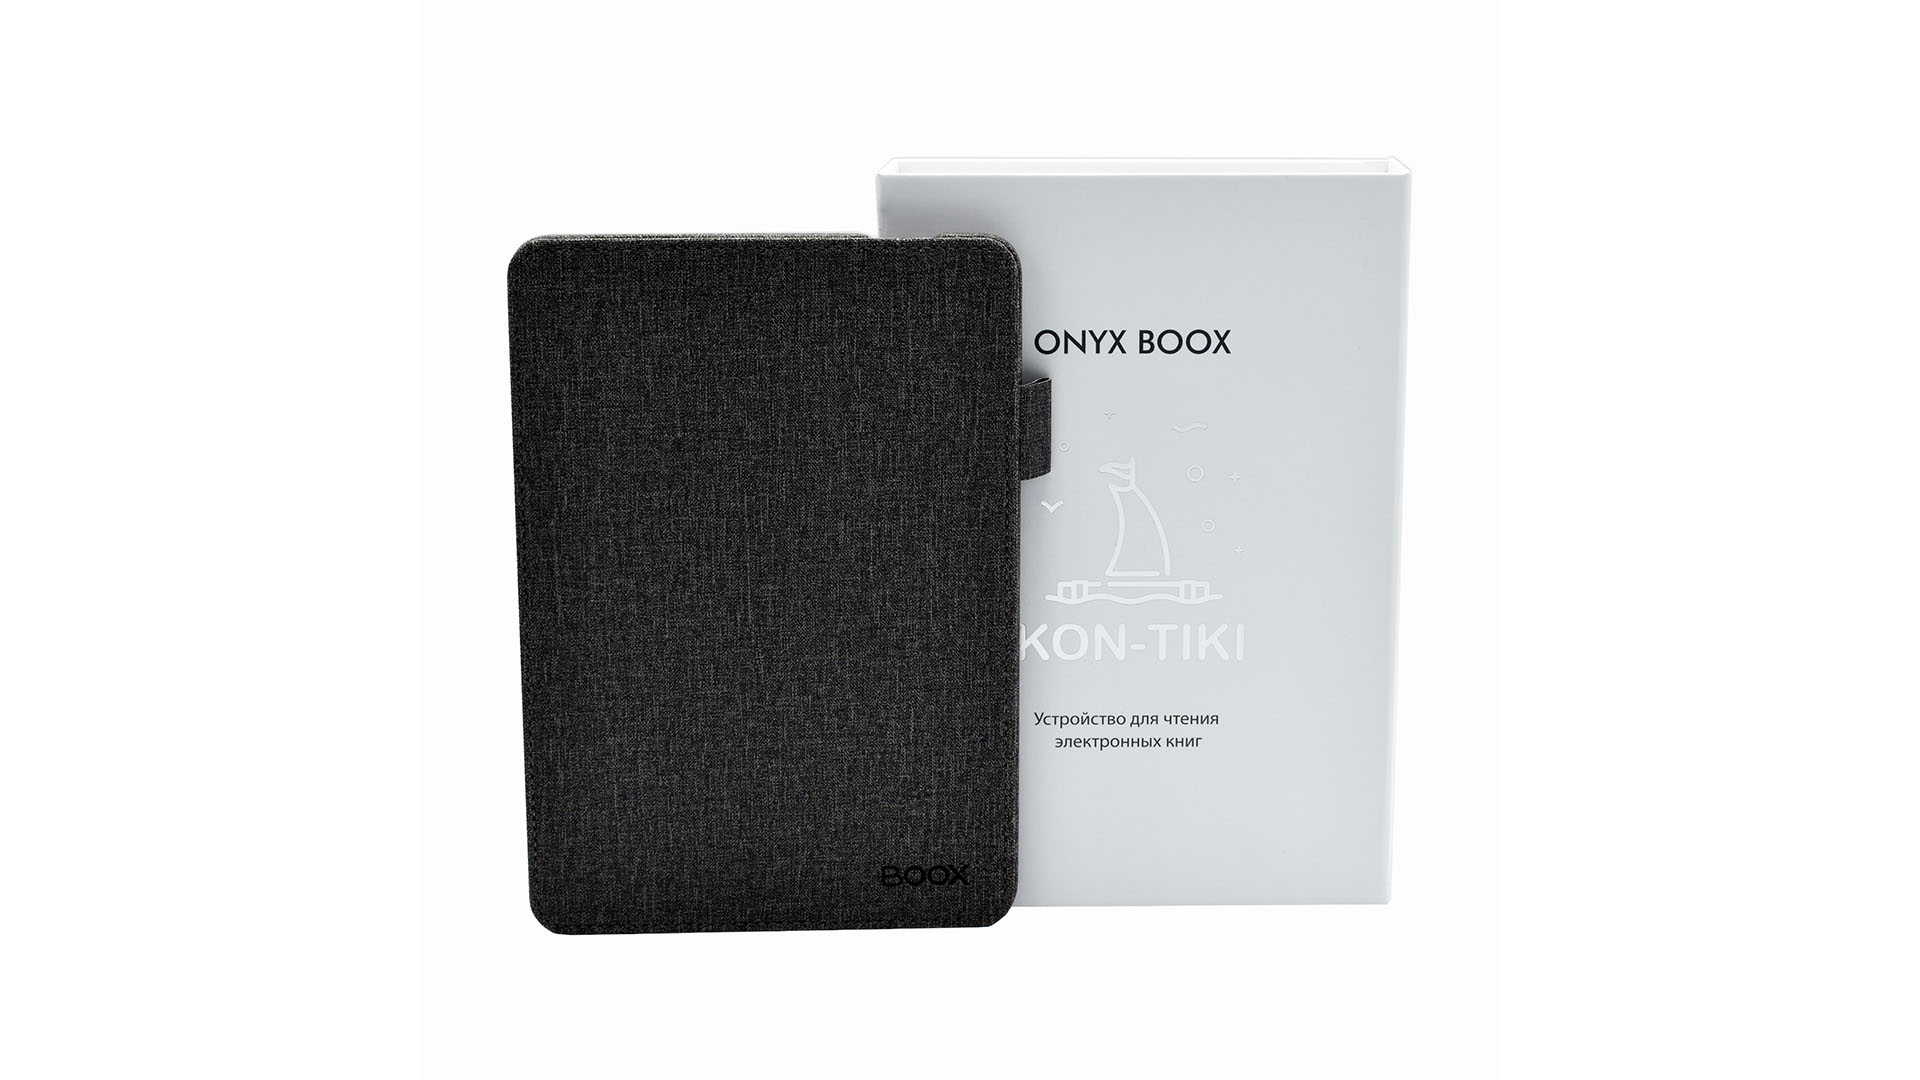 Коробка и умная обложка ONYX BOOX Kon-Tiki